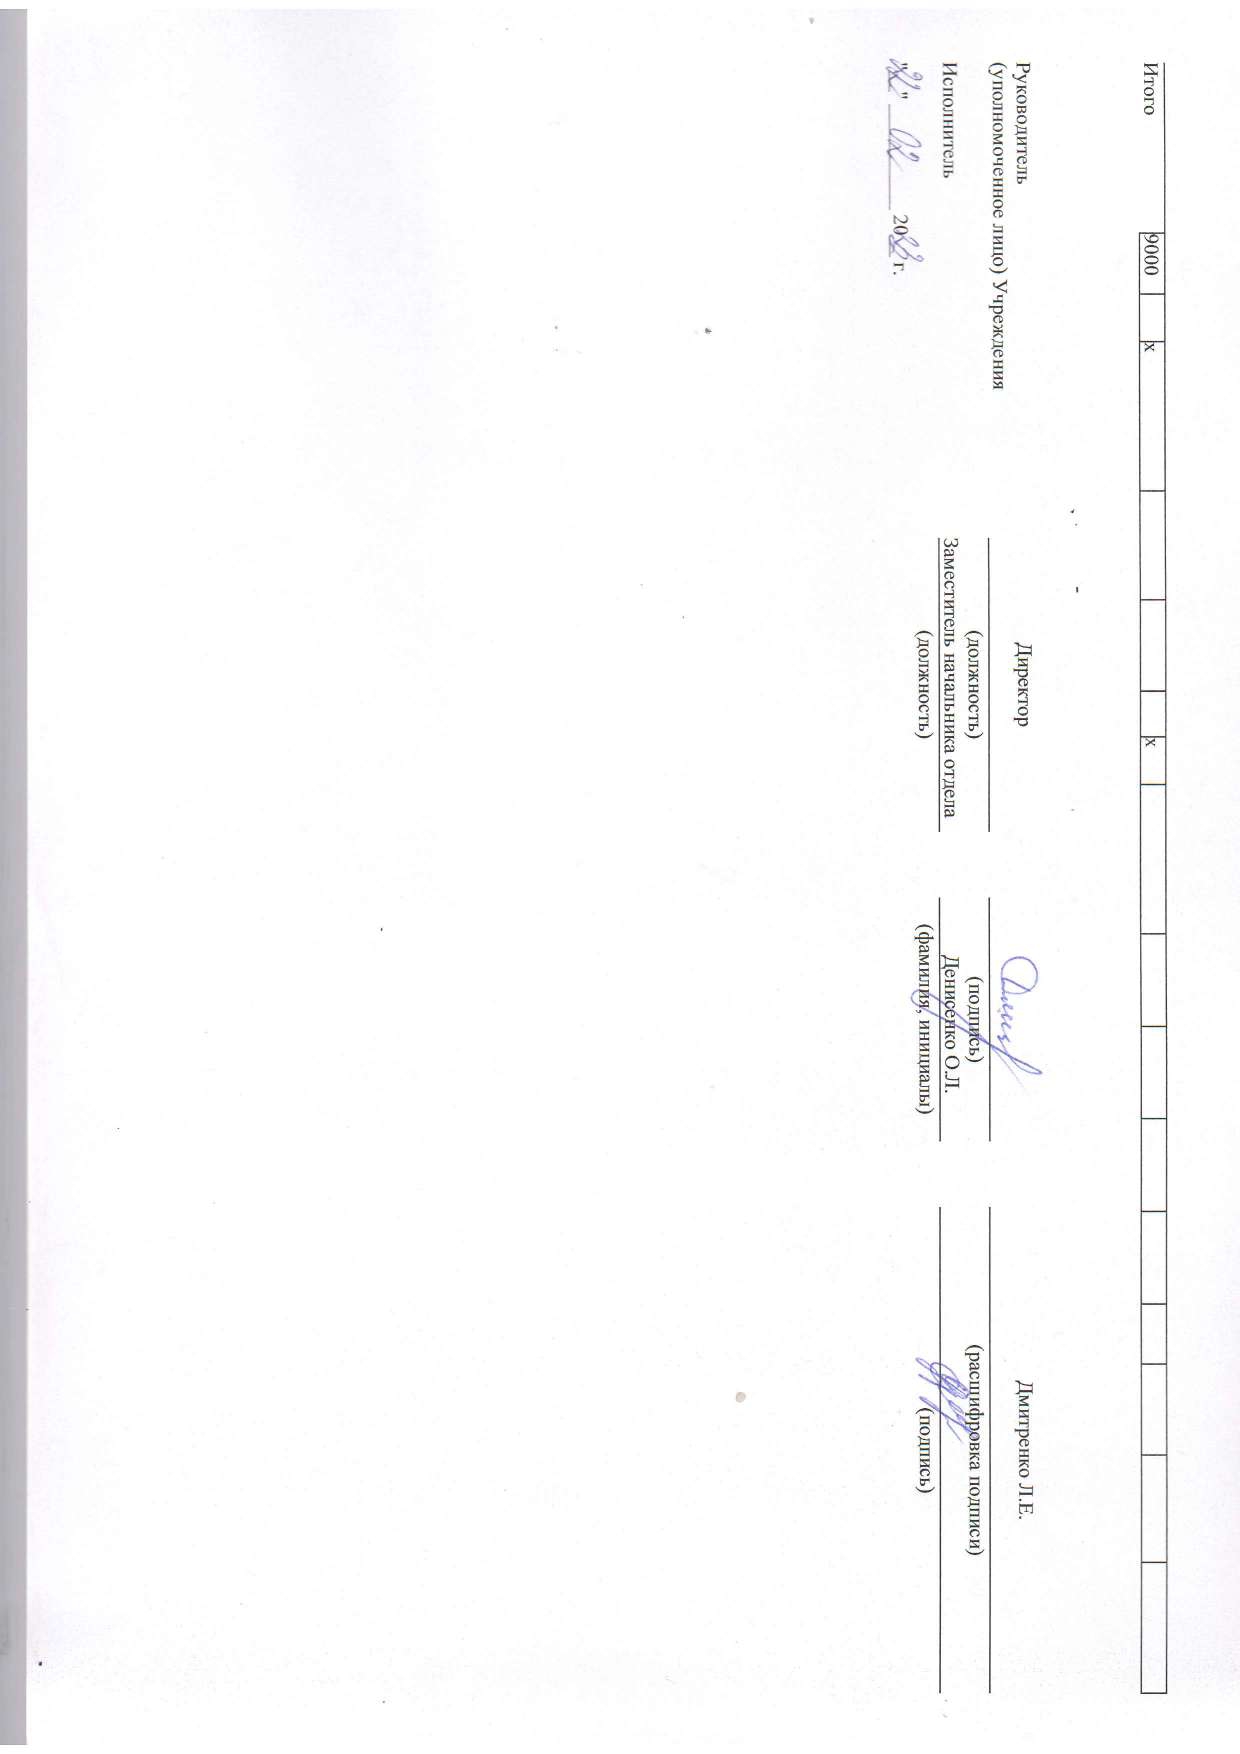 Отчет о результатах деятельности муниципального учреждения на 01.01.2023 г_page-0008.jpg